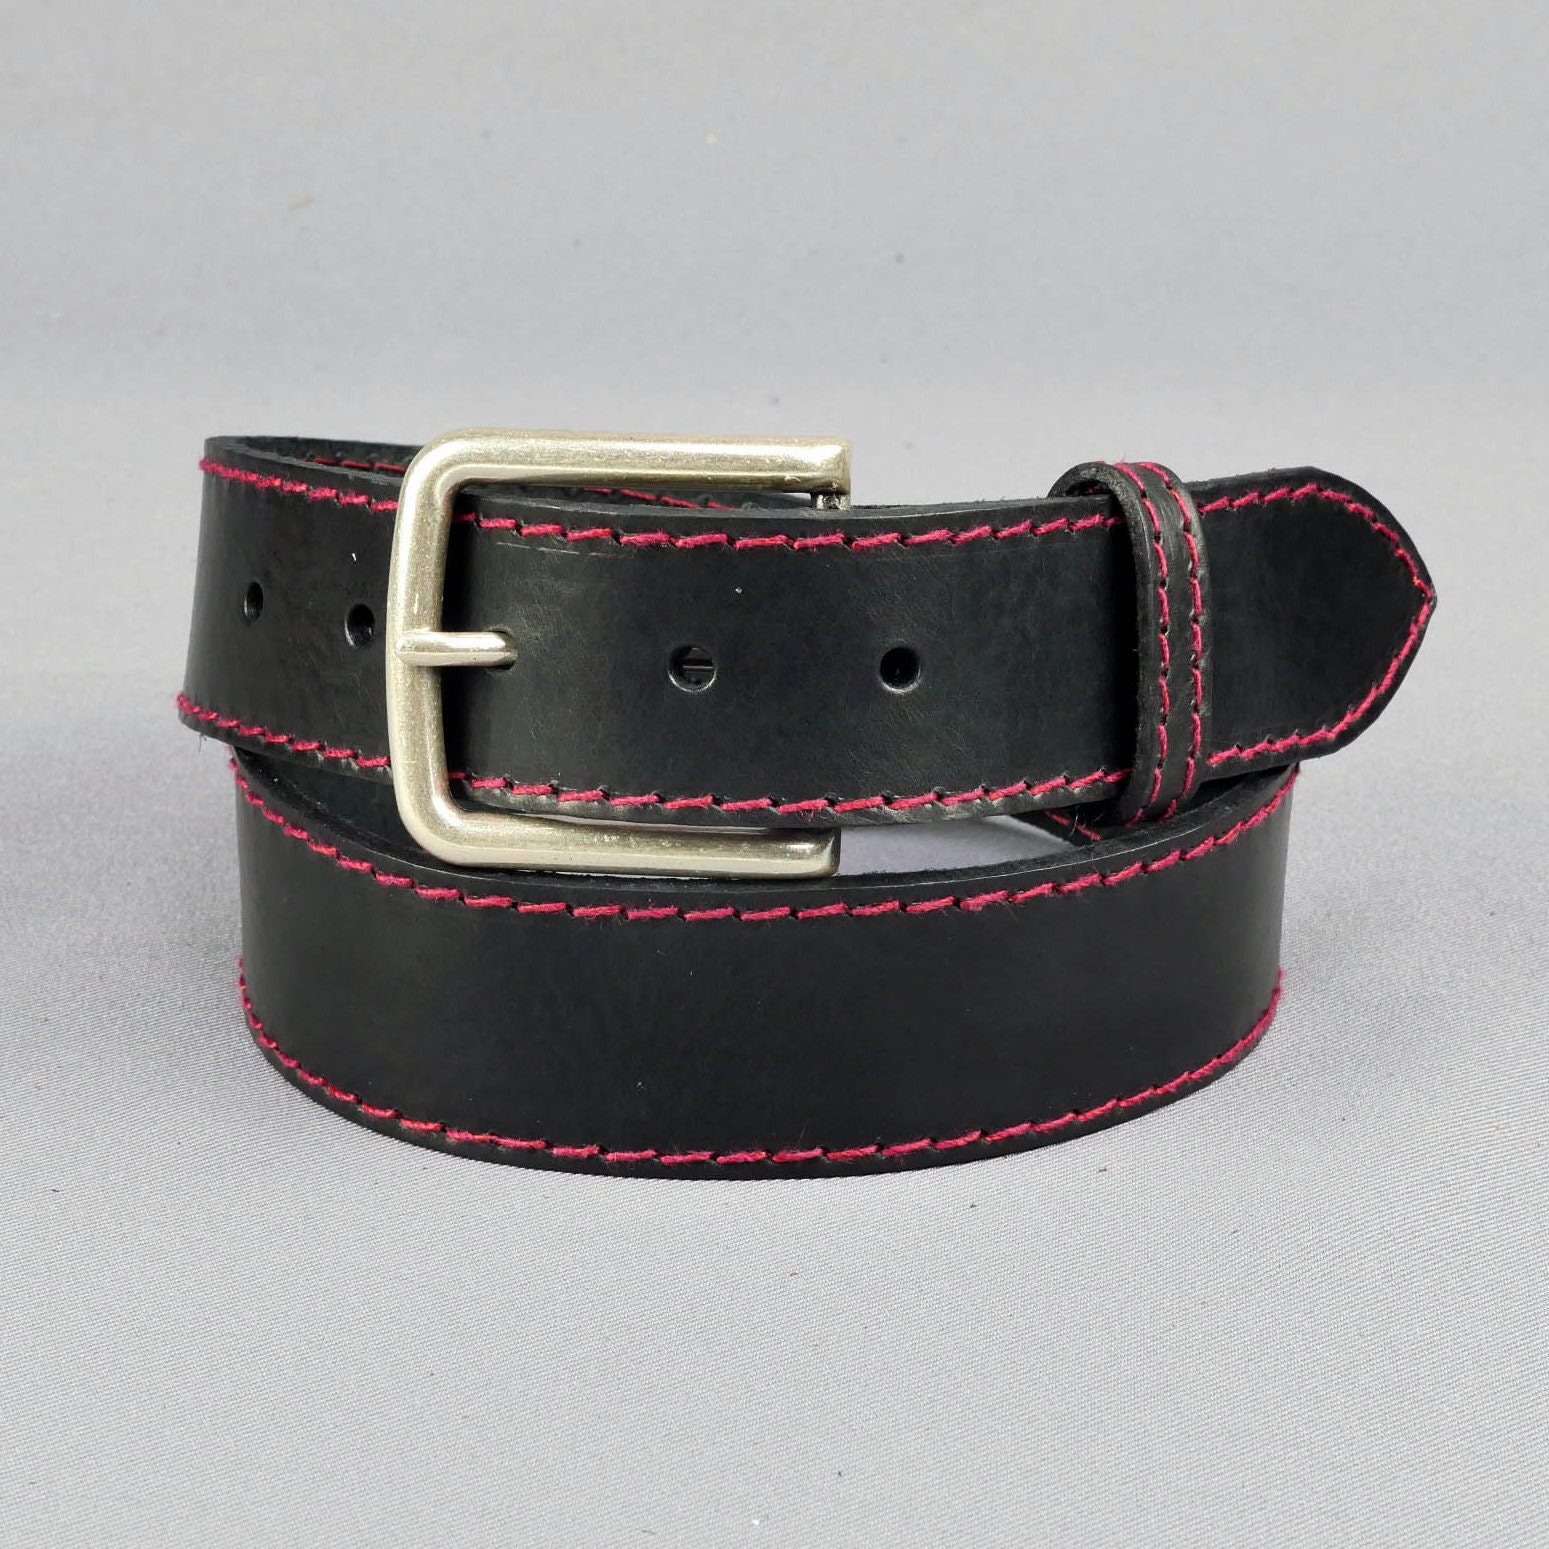 SALE Black Leather Belt Red and Black Stitched Belt - Etsy